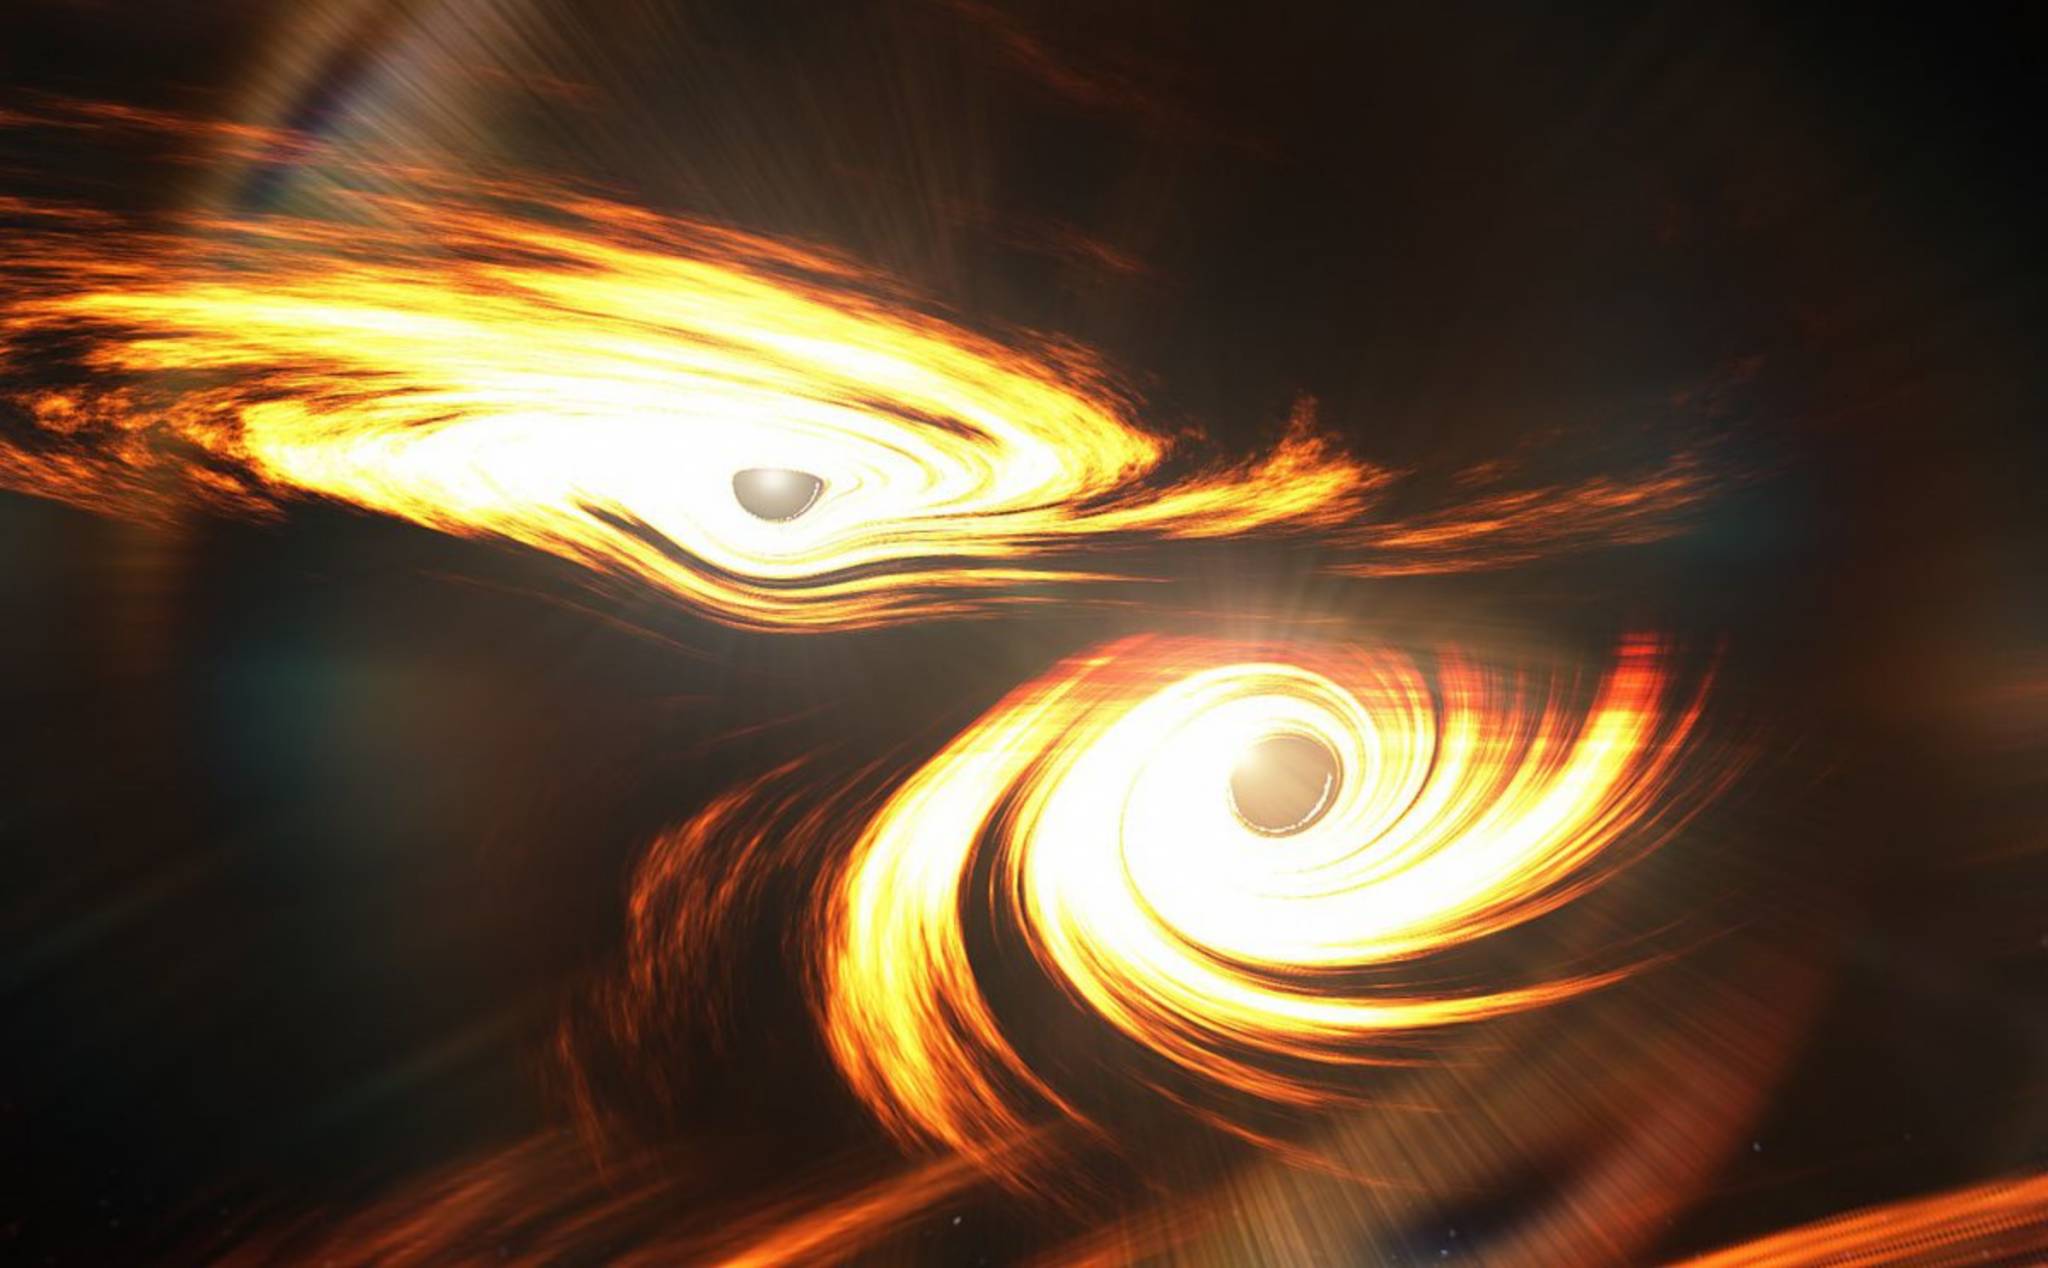 Hố đen: Bạn đã từng tò mò về những điều kì diệu của vũ trụ? Hãy cùng khám phá một bức tranh về những hố đen cực kì thú vị và bí ẩn. Bức ảnh đầy màu sắc chắc chắn sẽ khiến bạn kinh ngạc!